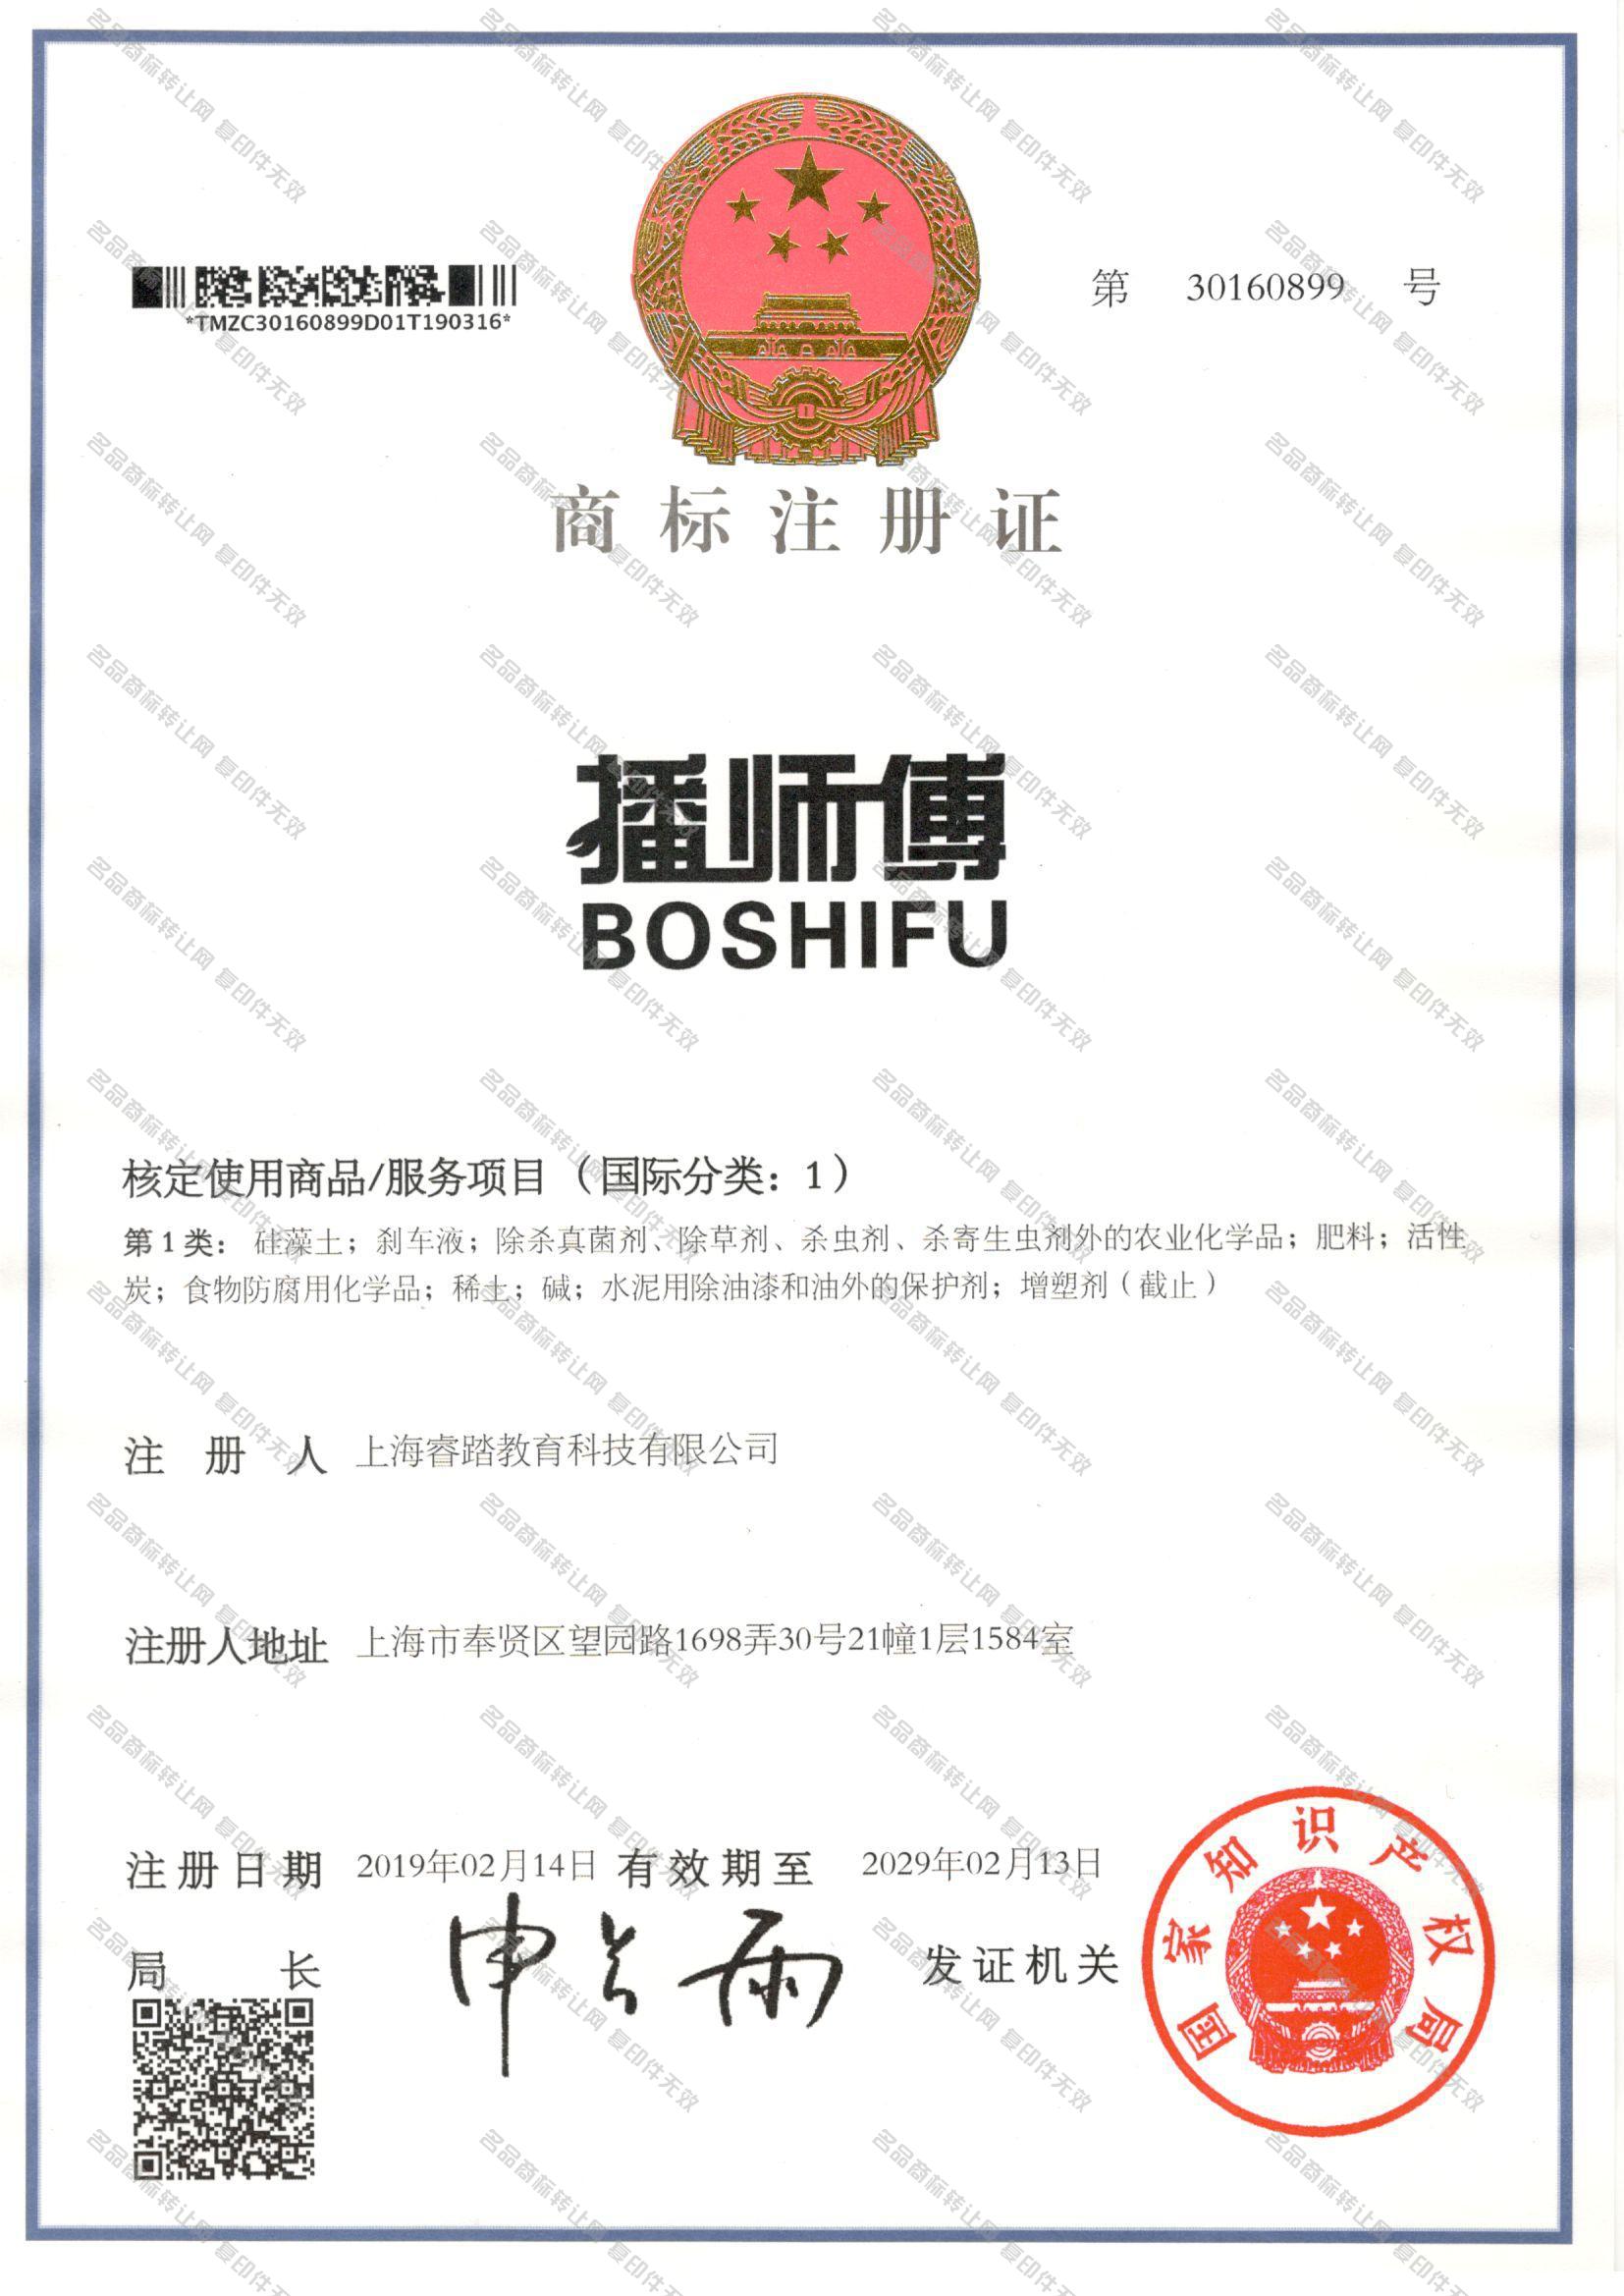 播师傅 BOSHIFU注册证